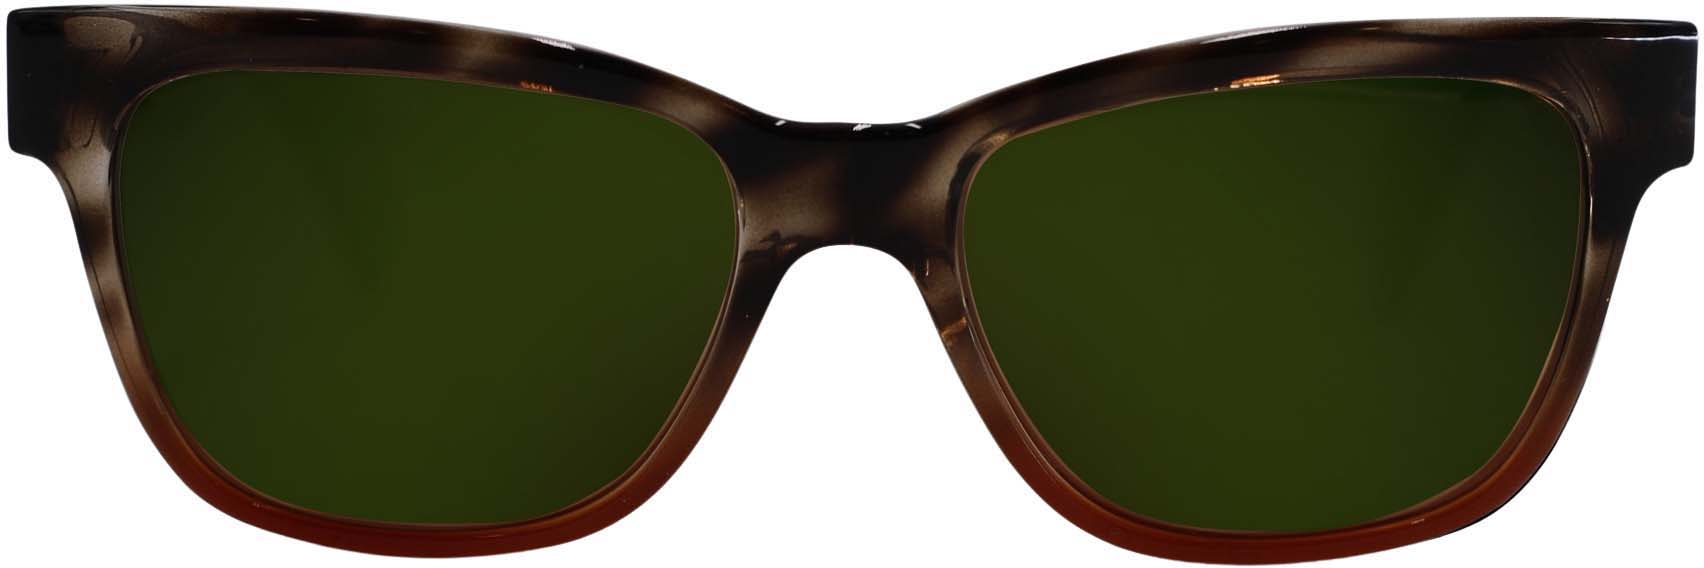 RLVNT Artemis Series Sunglasses